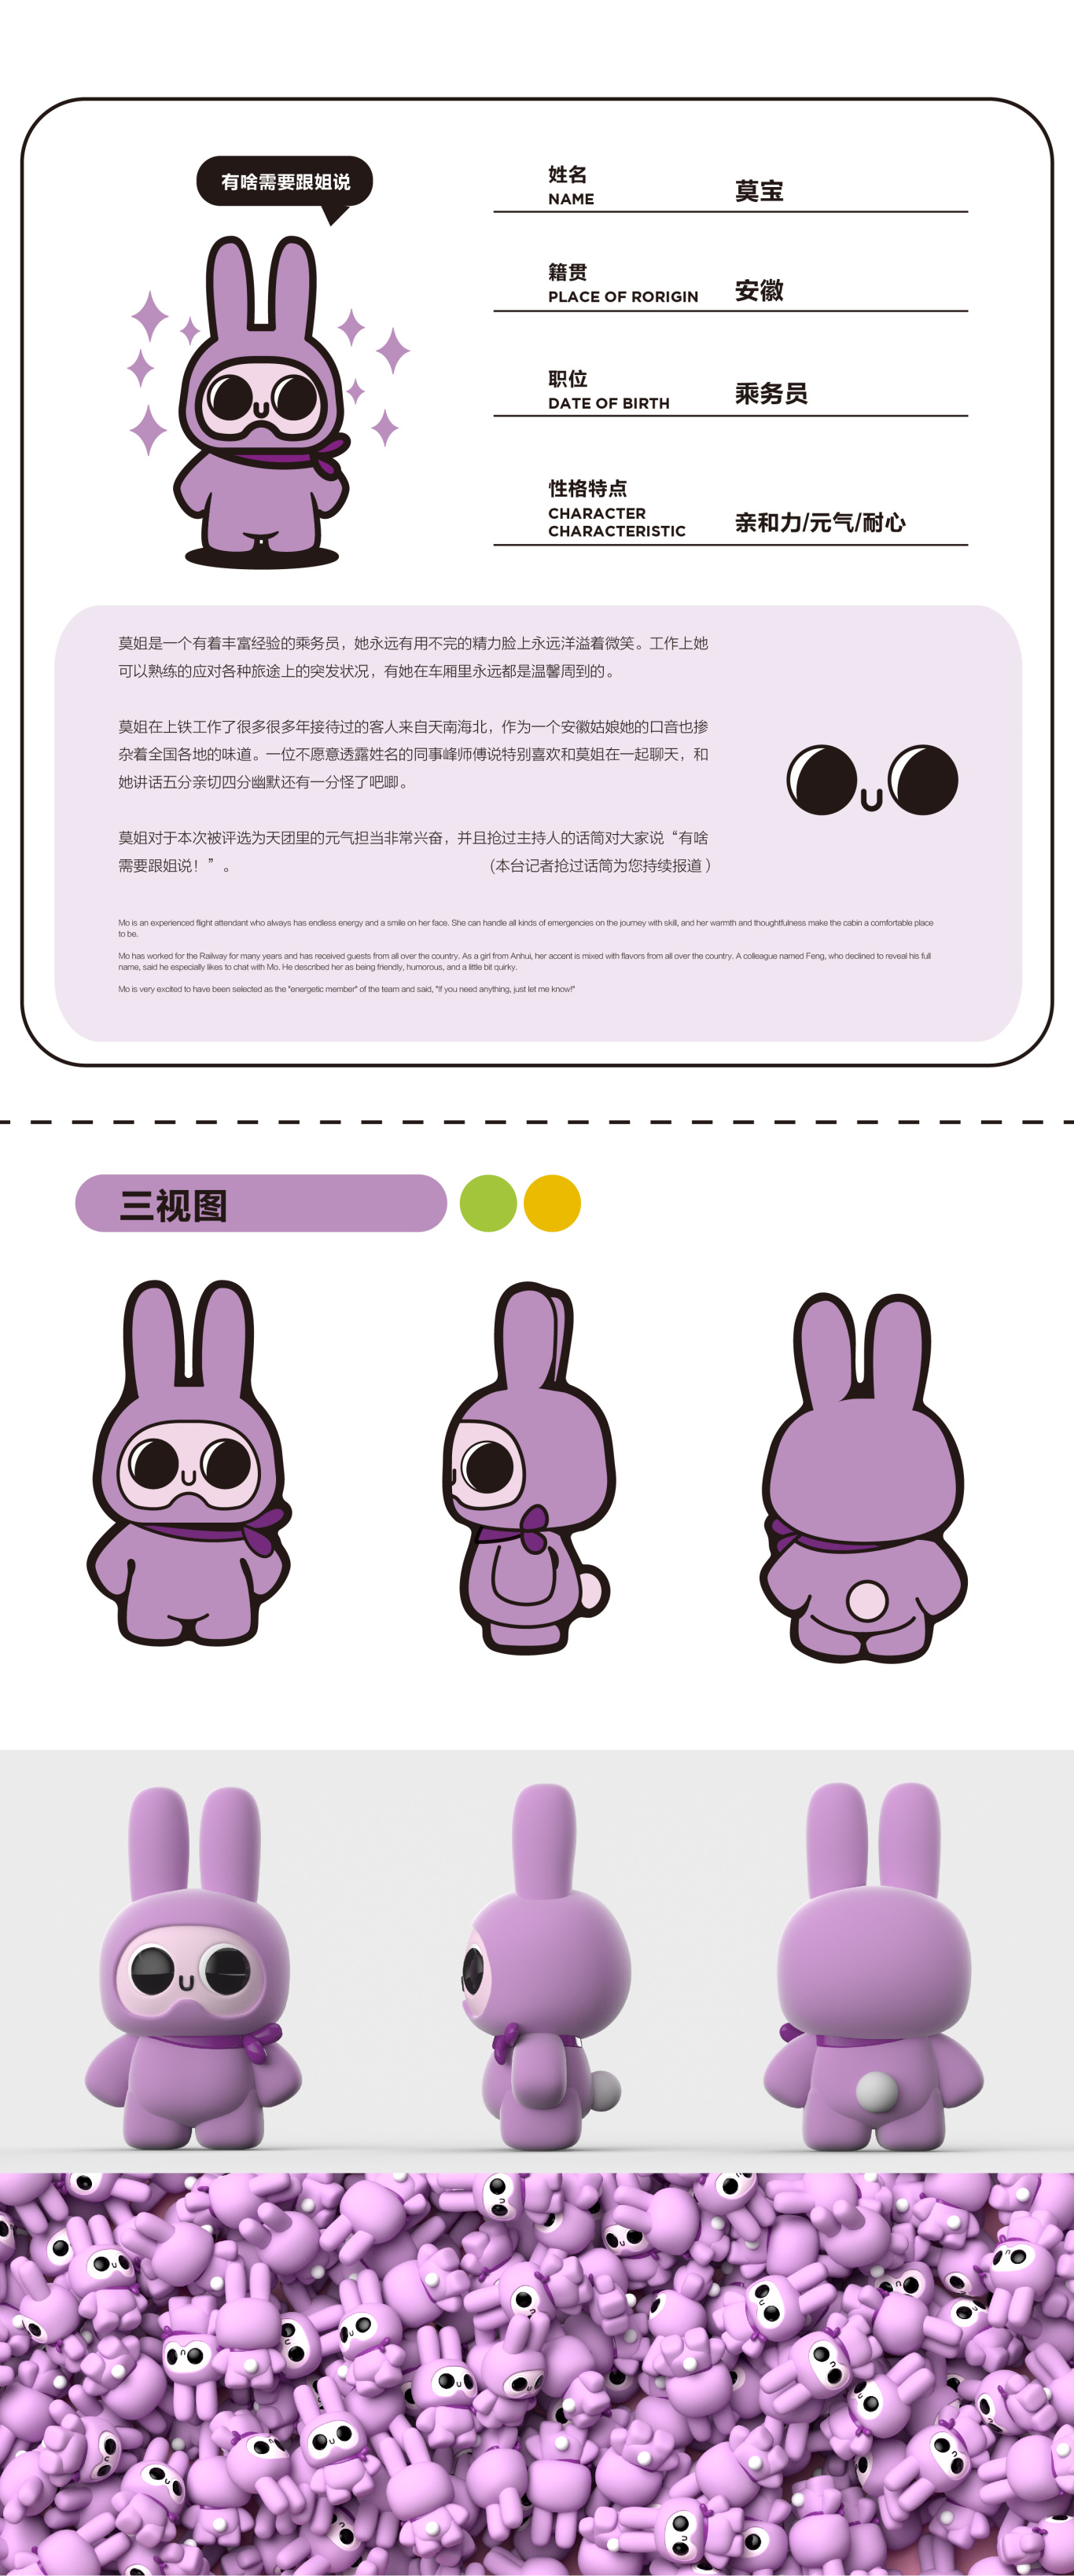 上海铁路吉祥物设计图5